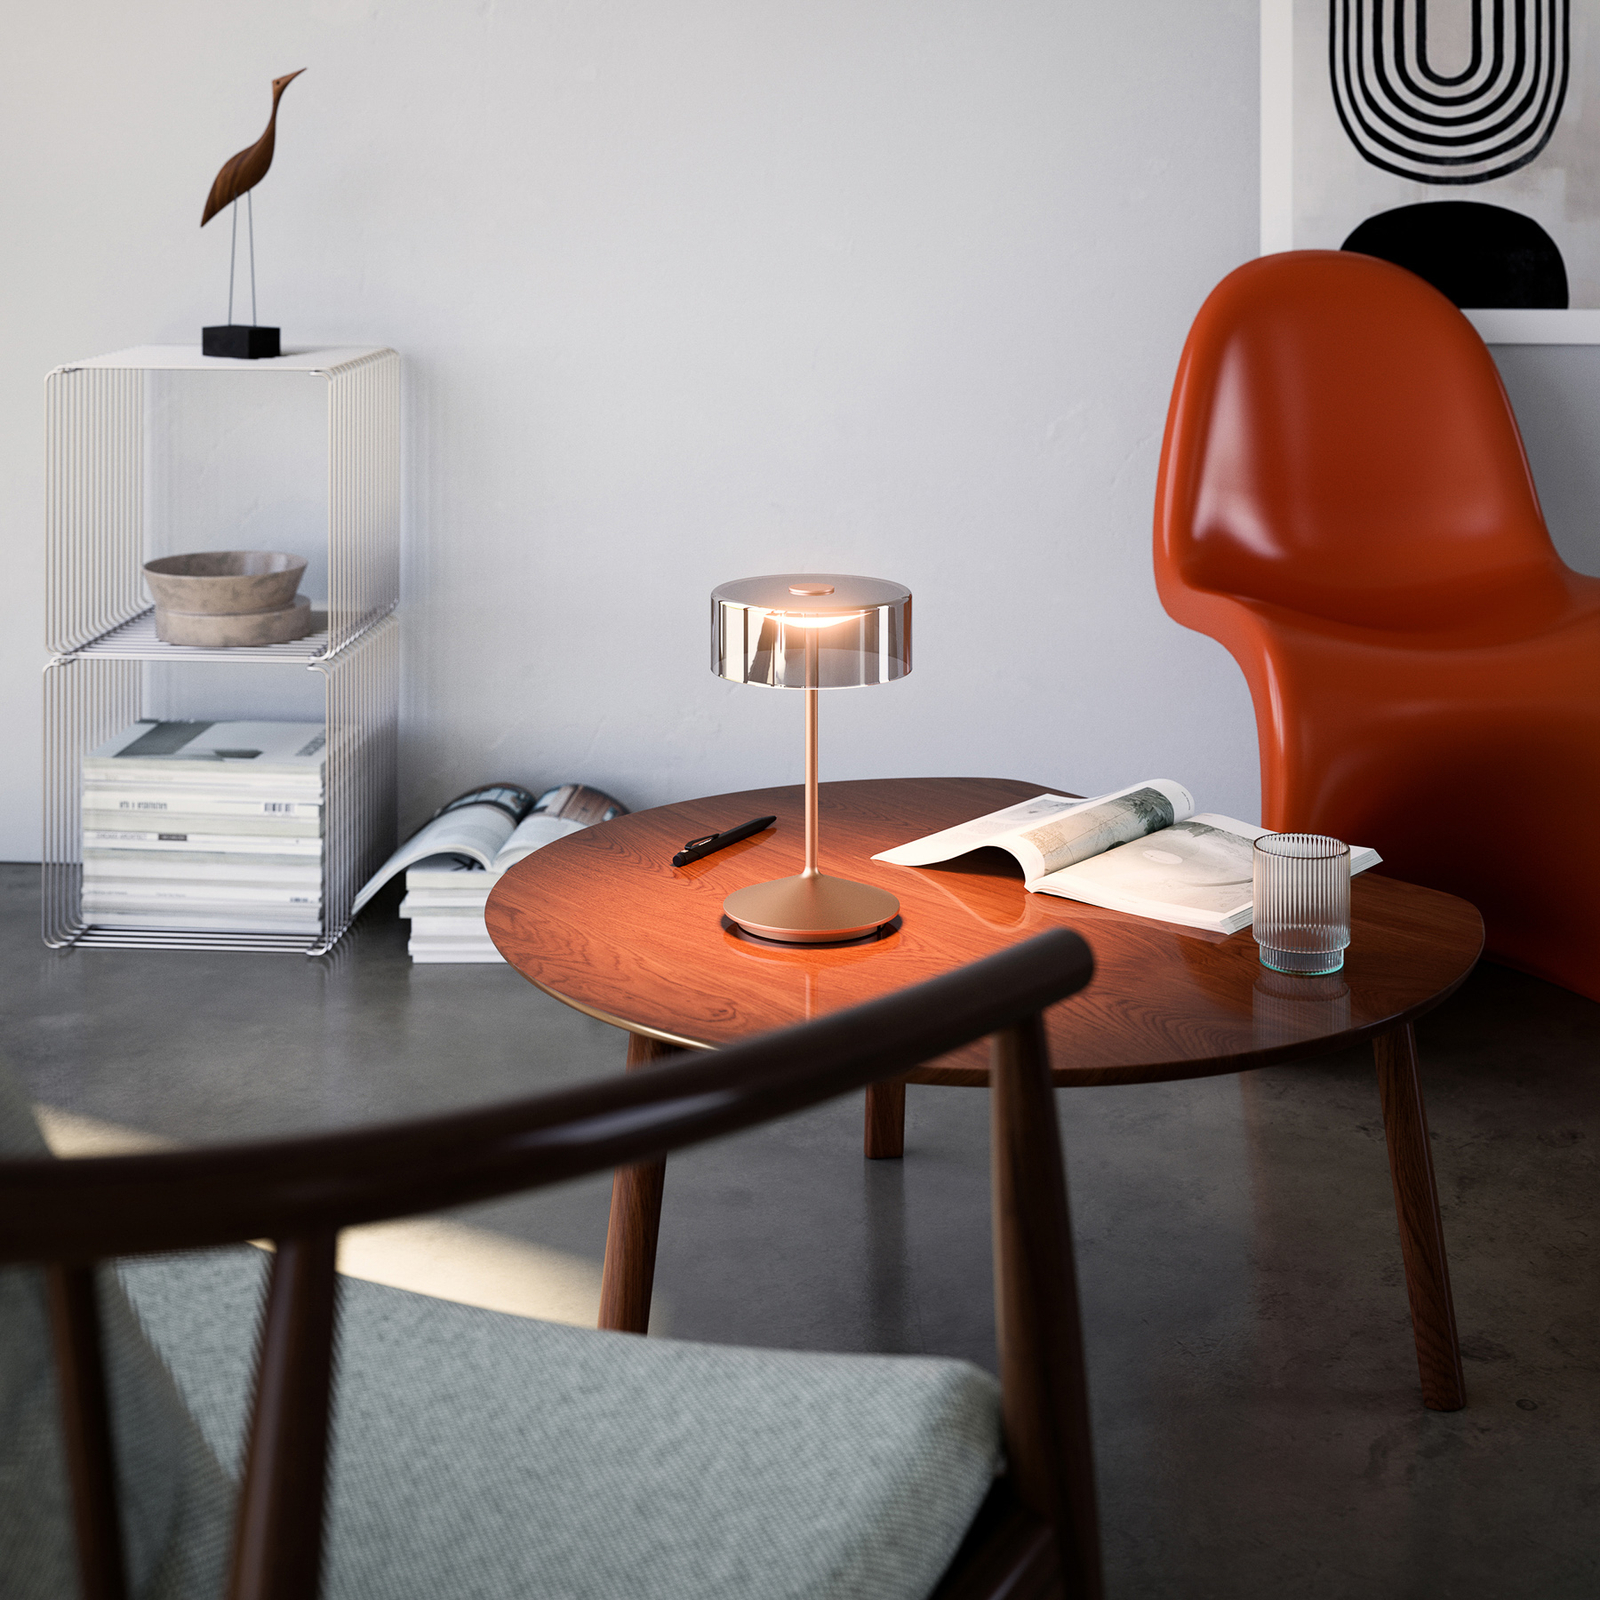 Candeeiro de mesa recarregável Numotion LED, IP54, cor de bronze